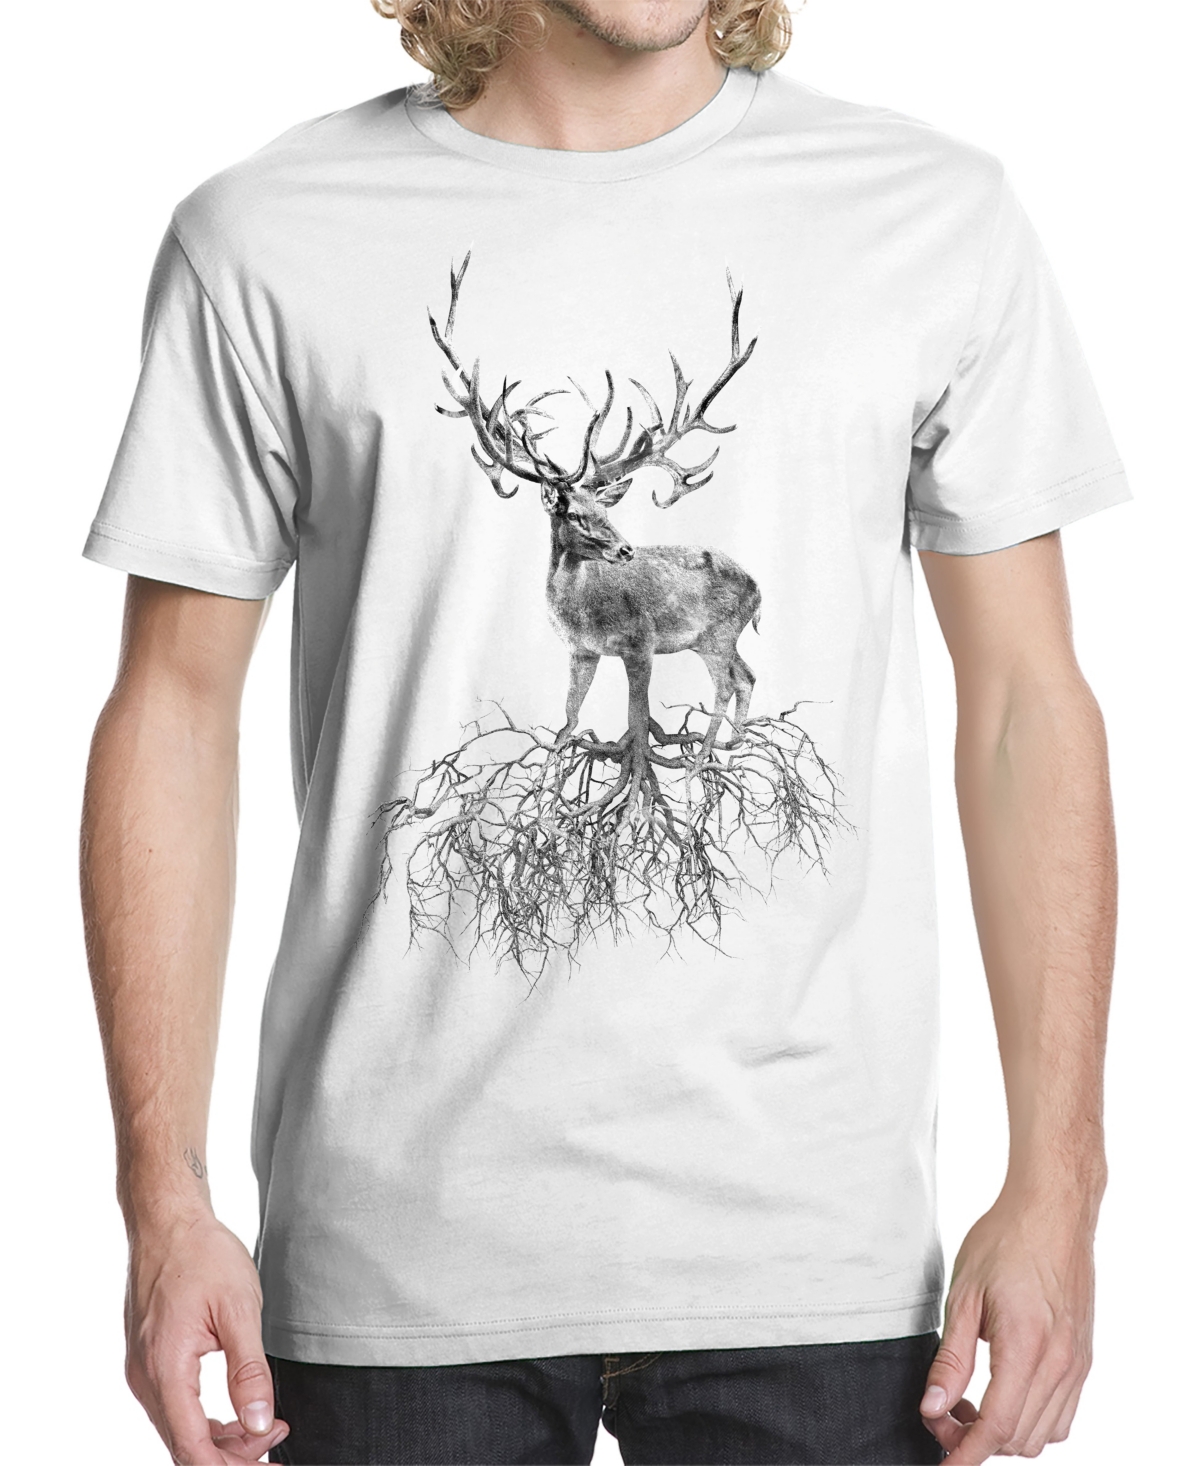 Men's Roots Go Deep Graphic T-shirt - White